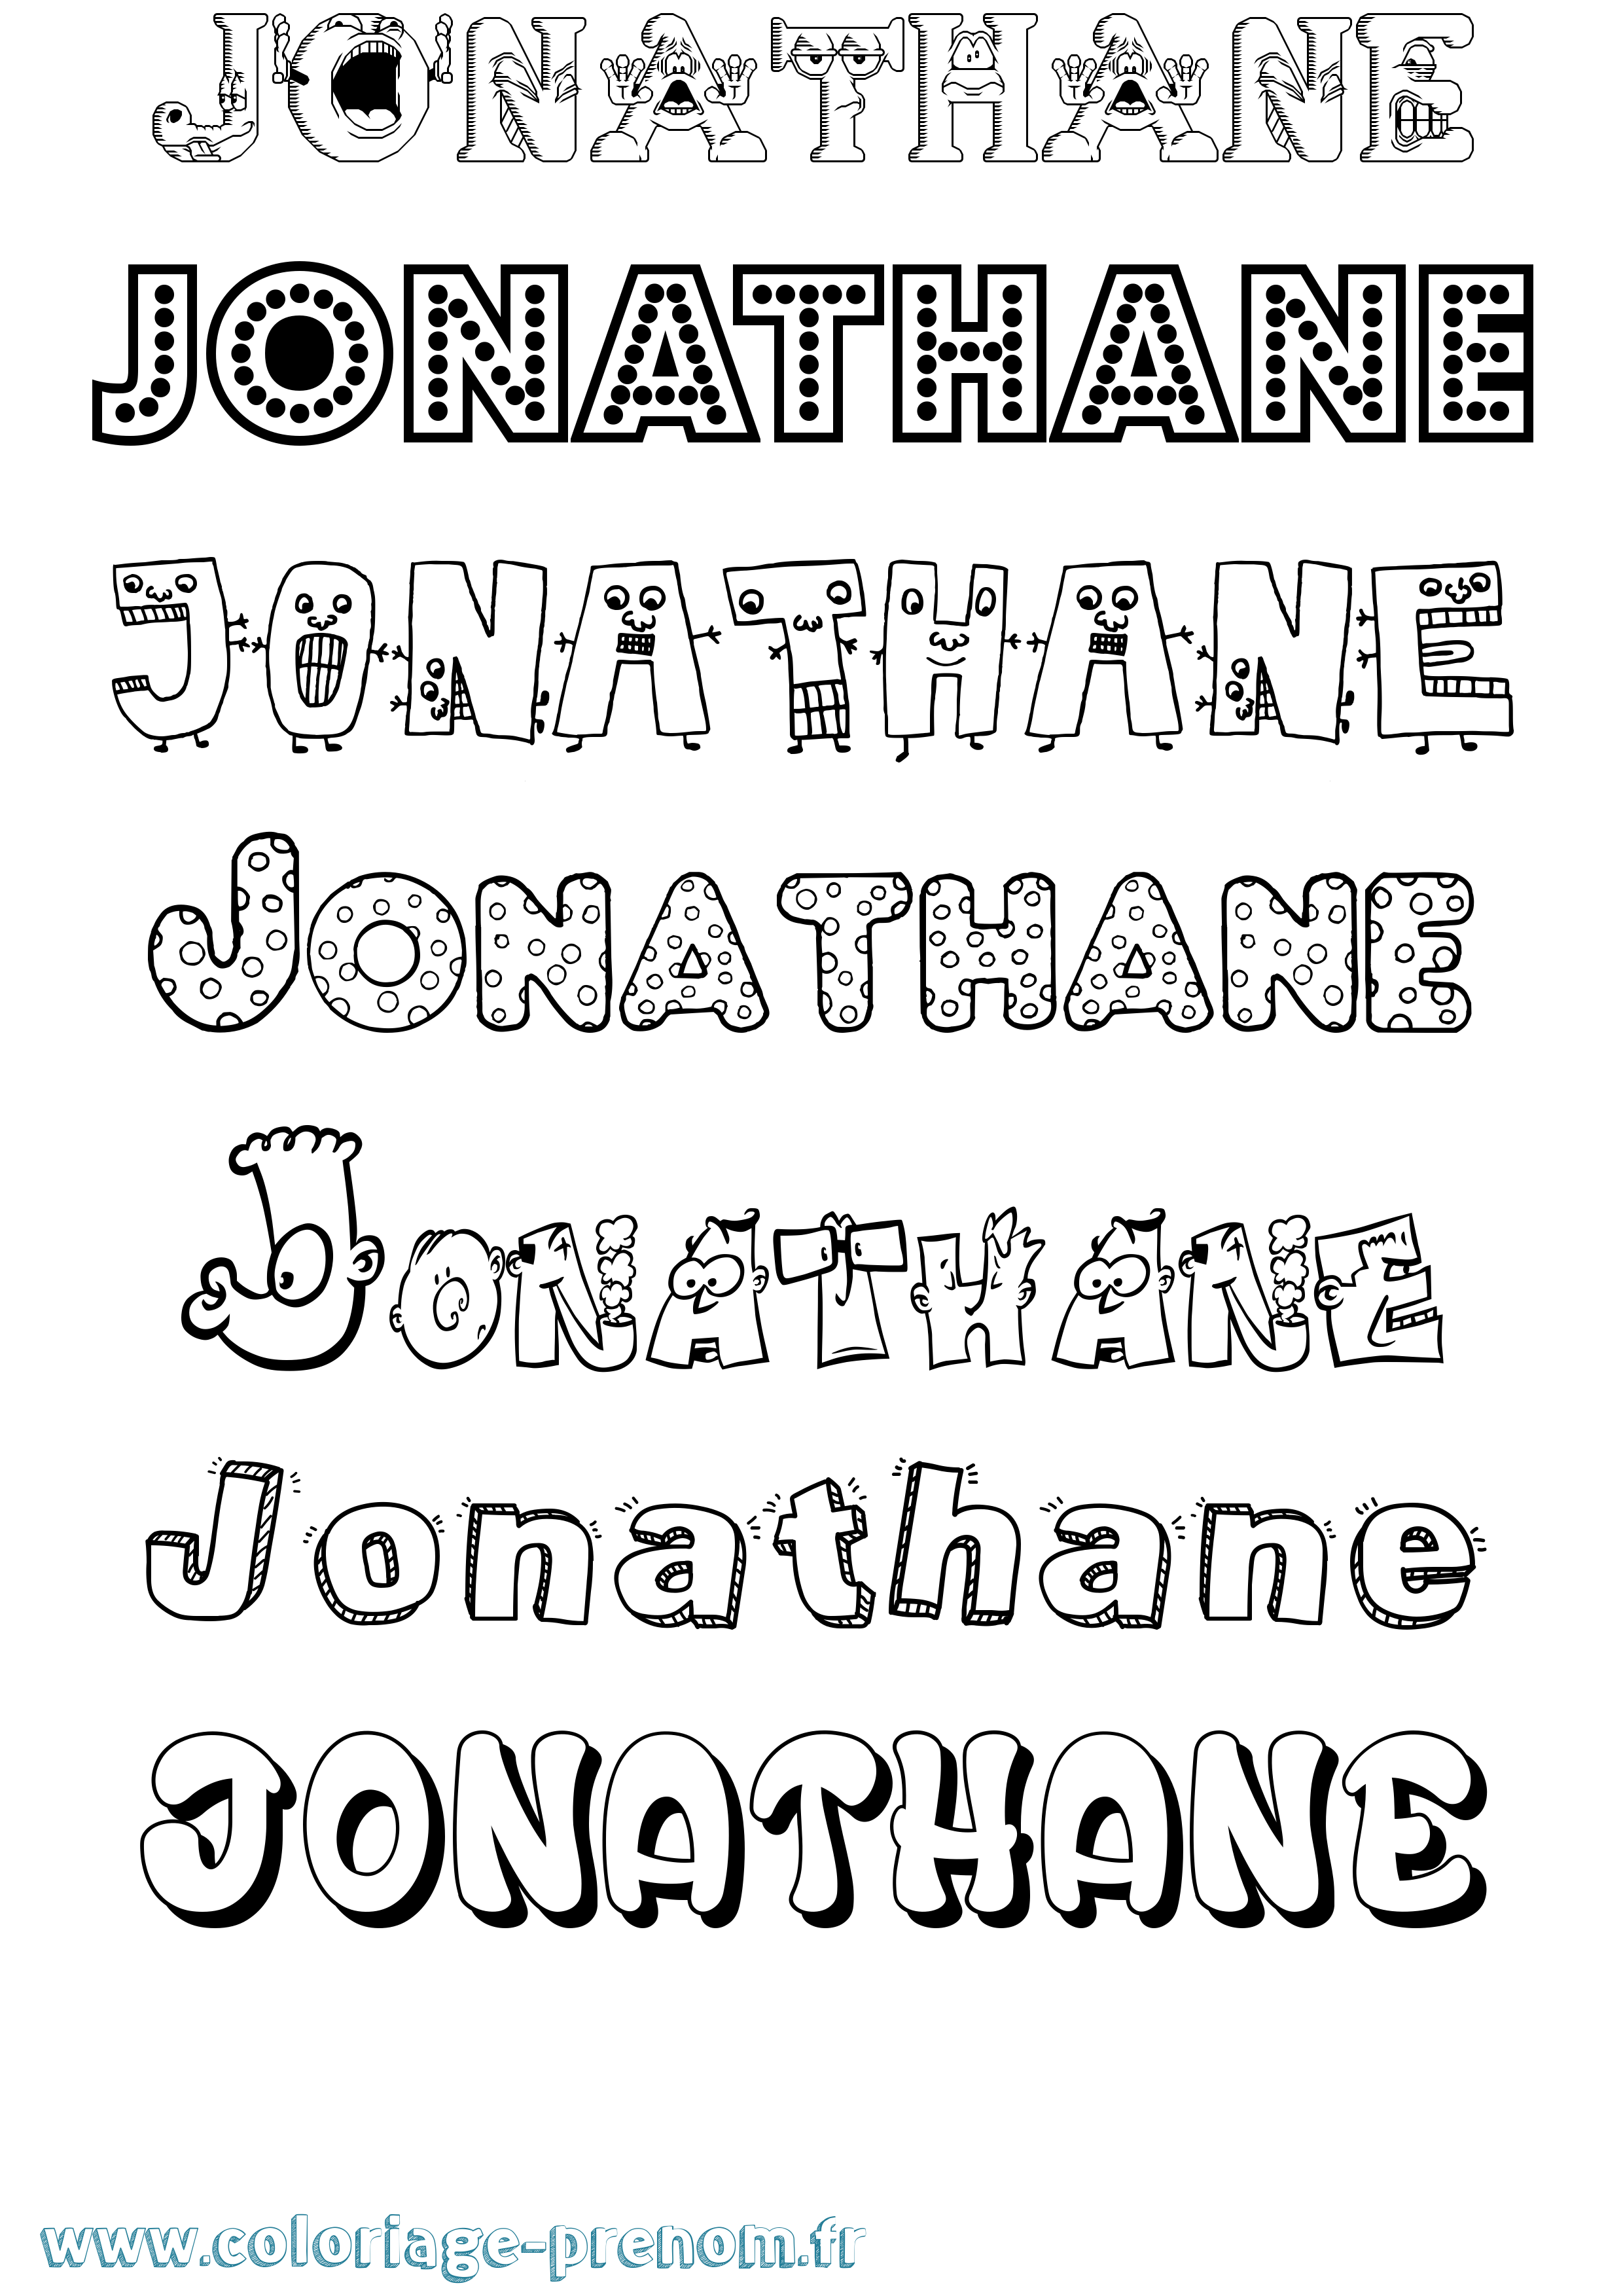 Coloriage prénom Jonathane Fun